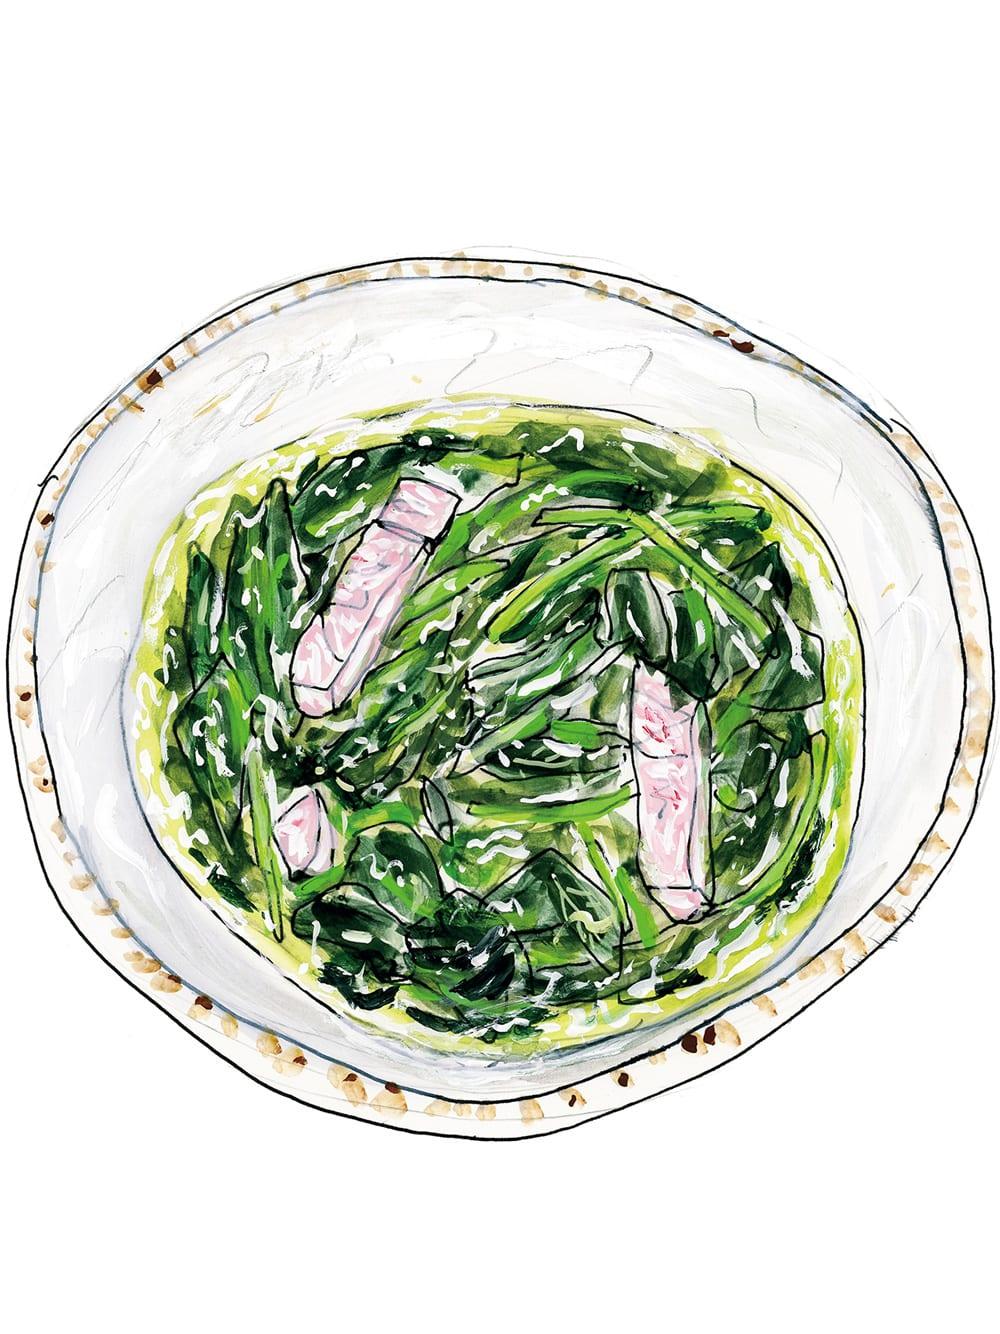 クレソンのスープは滋養のかたまり。平松洋子「小さな料理 大きな味」Vol.7